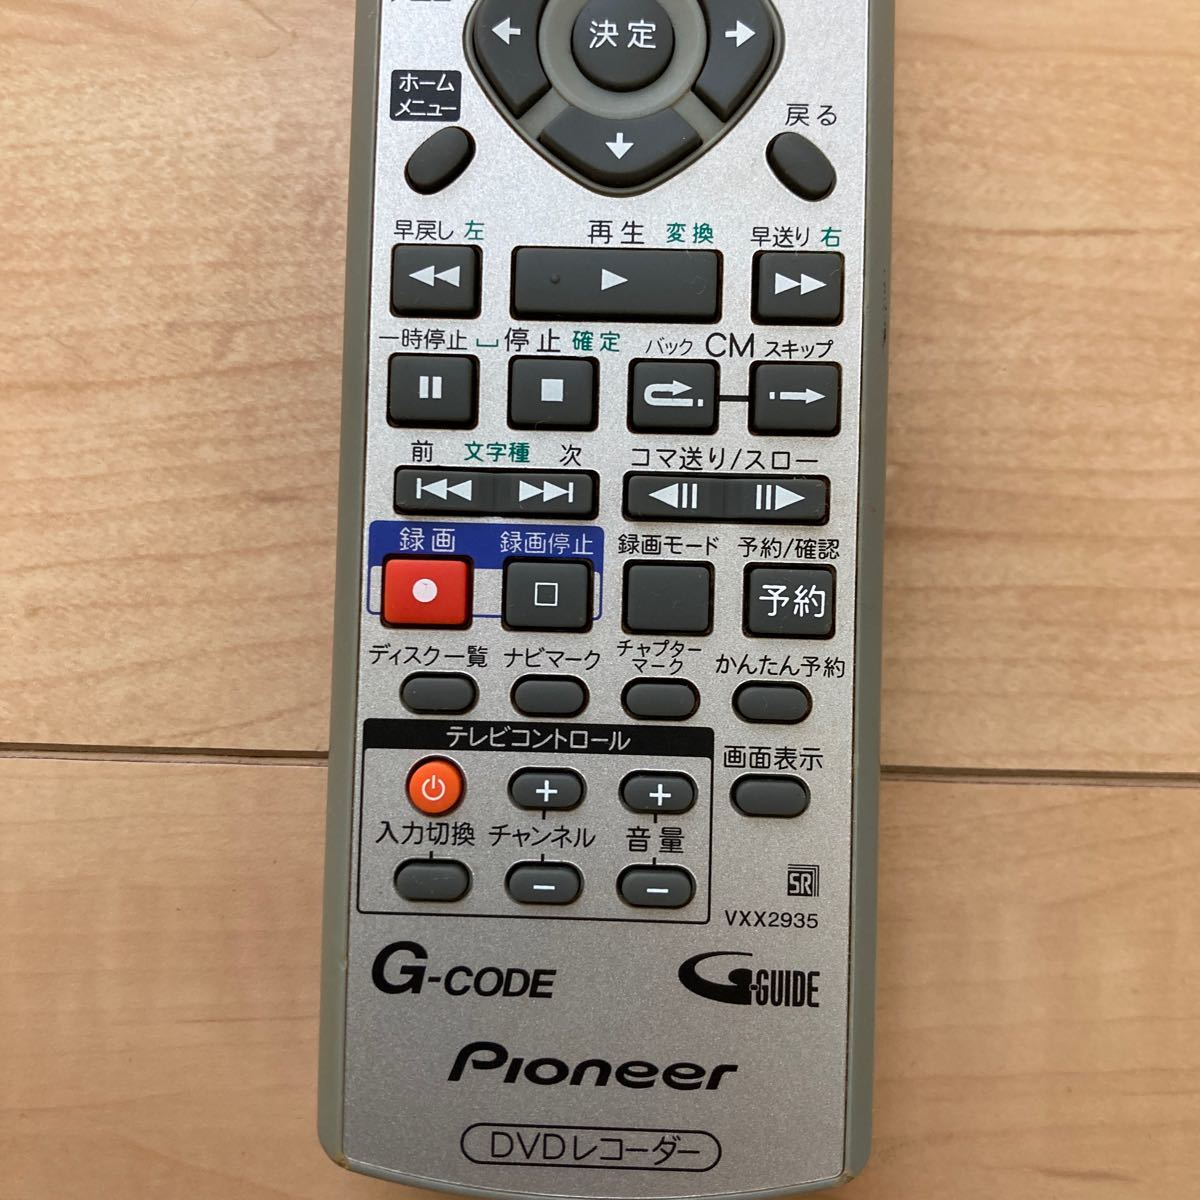 Pioneer Pioneer DVD recorder remote control VXX2935 ①